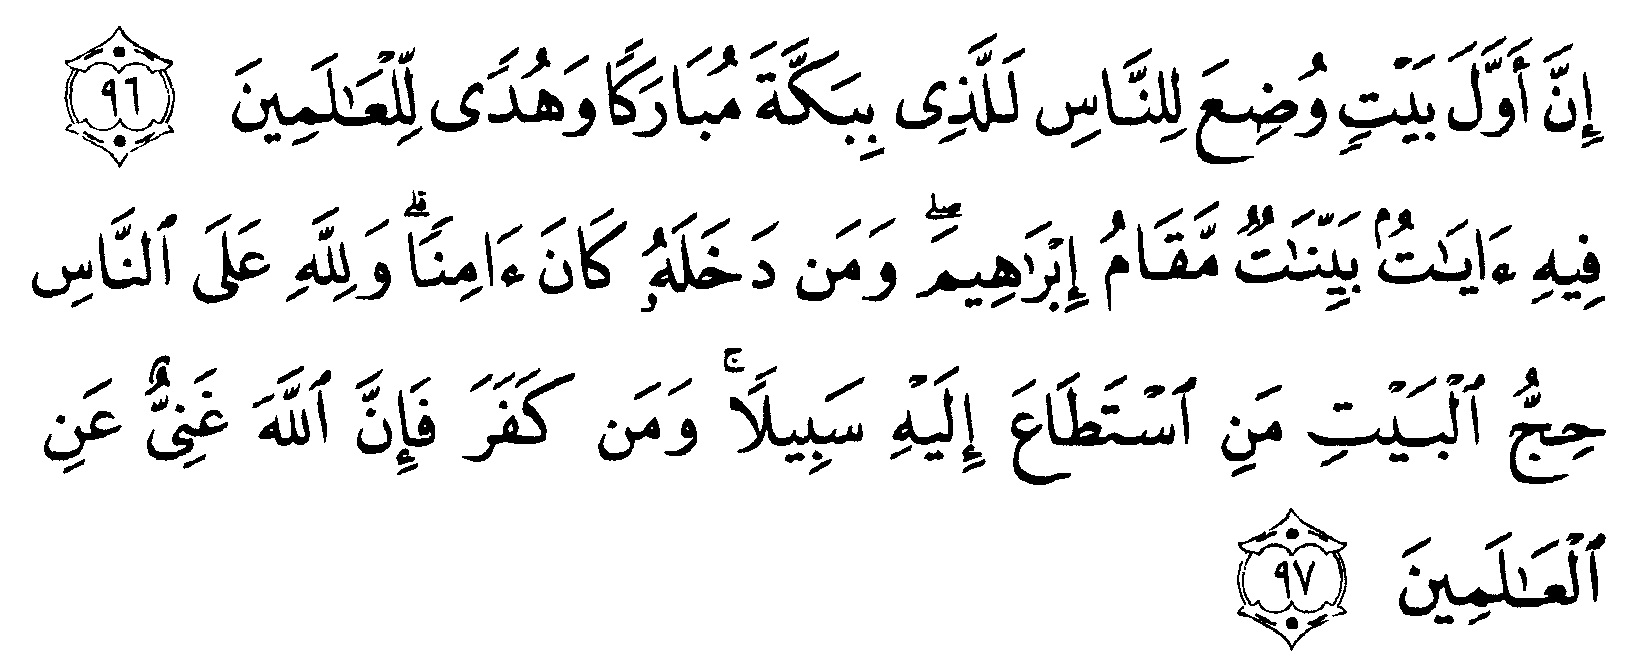 download al imran ayat 159 mp3